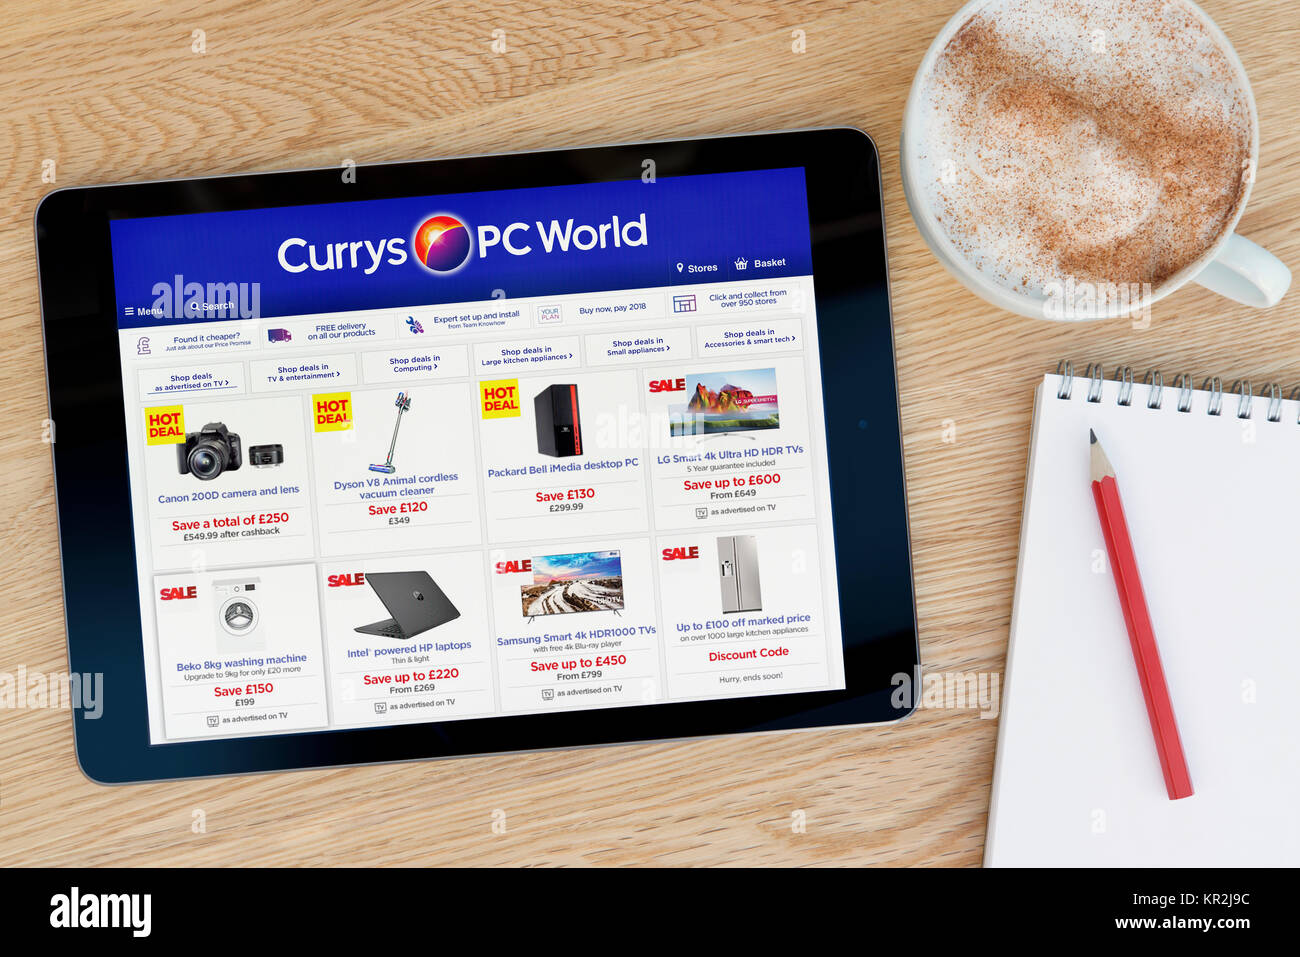 Les Currys PC World site sur un iPad tablet device qui repose sur une table en bois à côté d'un bloc-notes et un crayon et une tasse de café (rédaction uniquement) Banque D'Images